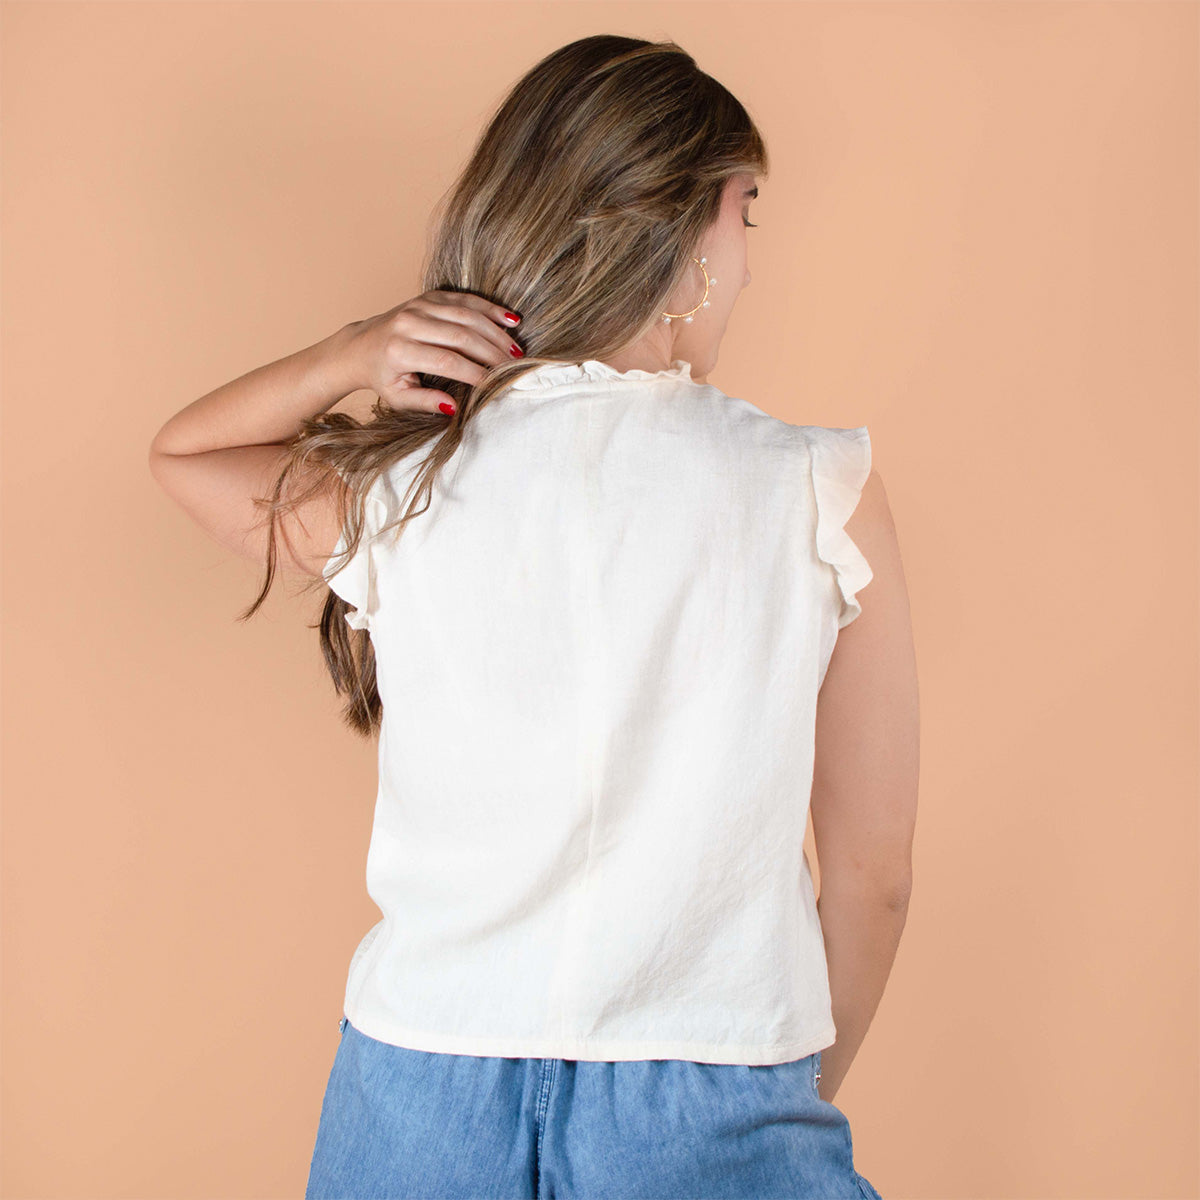 Blusa manga sisa color arena con boleros y moño ajustable en cuello 104365